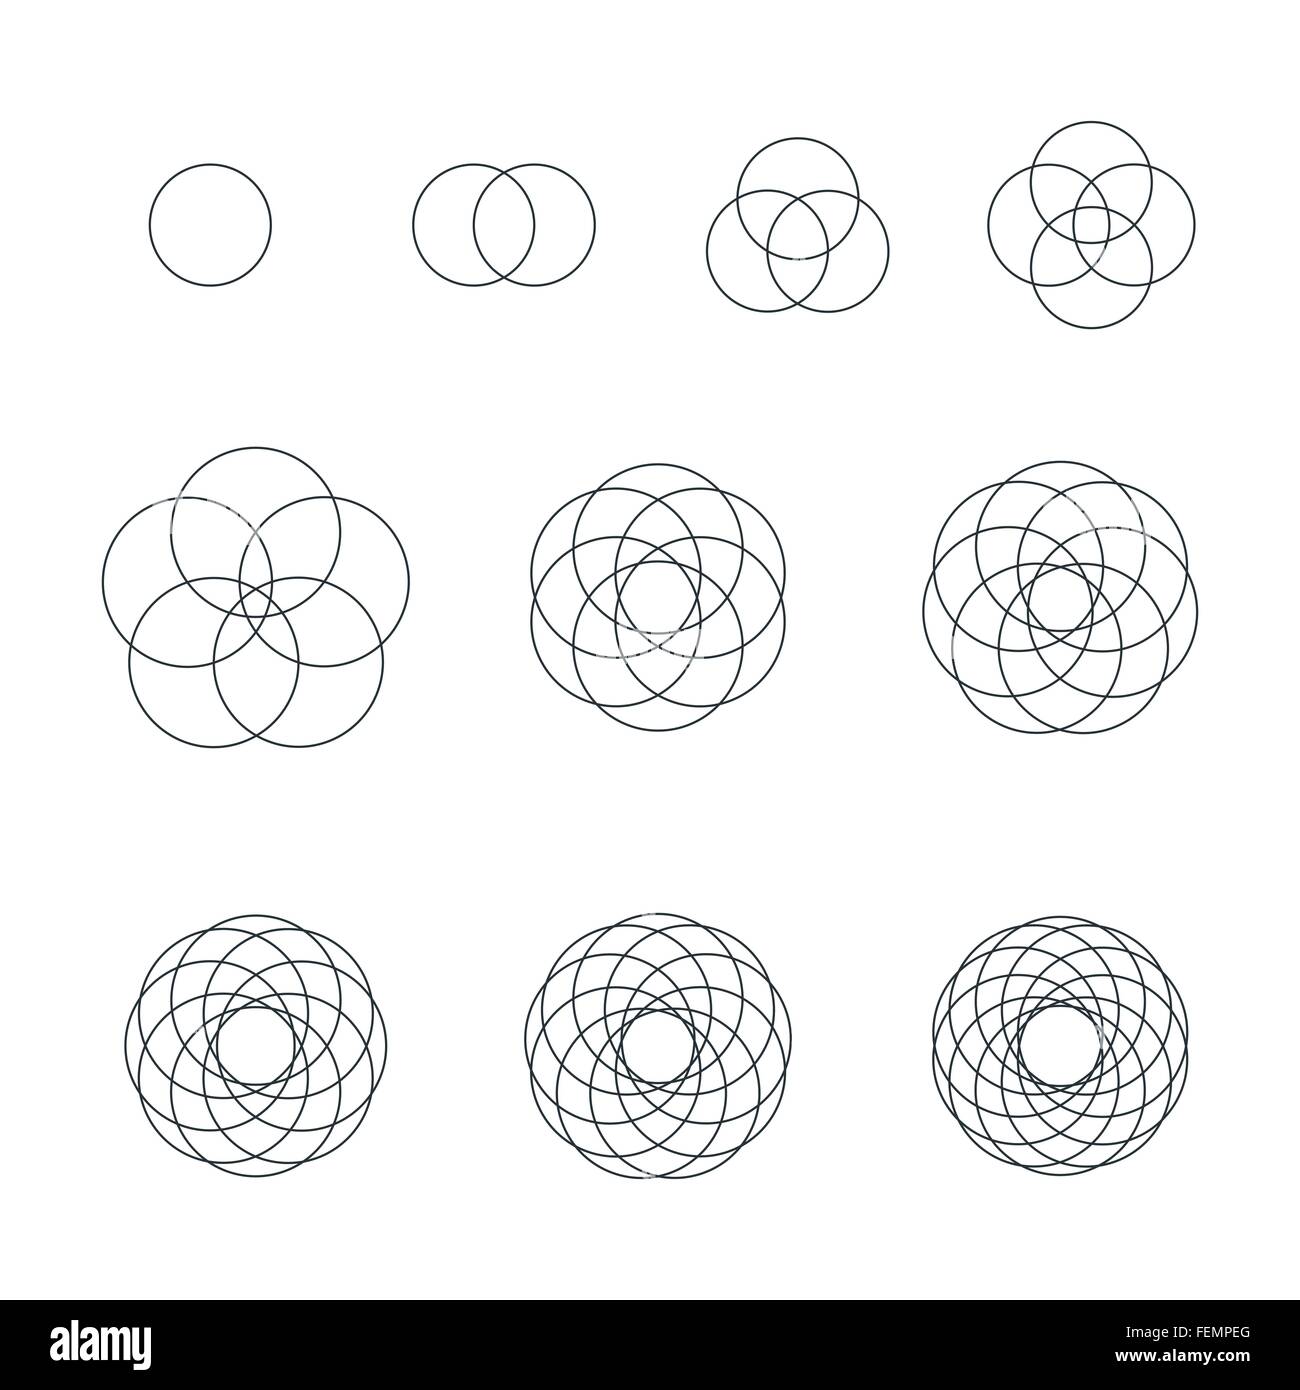 Cerchio di vettore di contorno nero monocromatico variazioni di geometria sacra decorazione raccolta di elementi isolati sfondo bianco Illustrazione Vettoriale